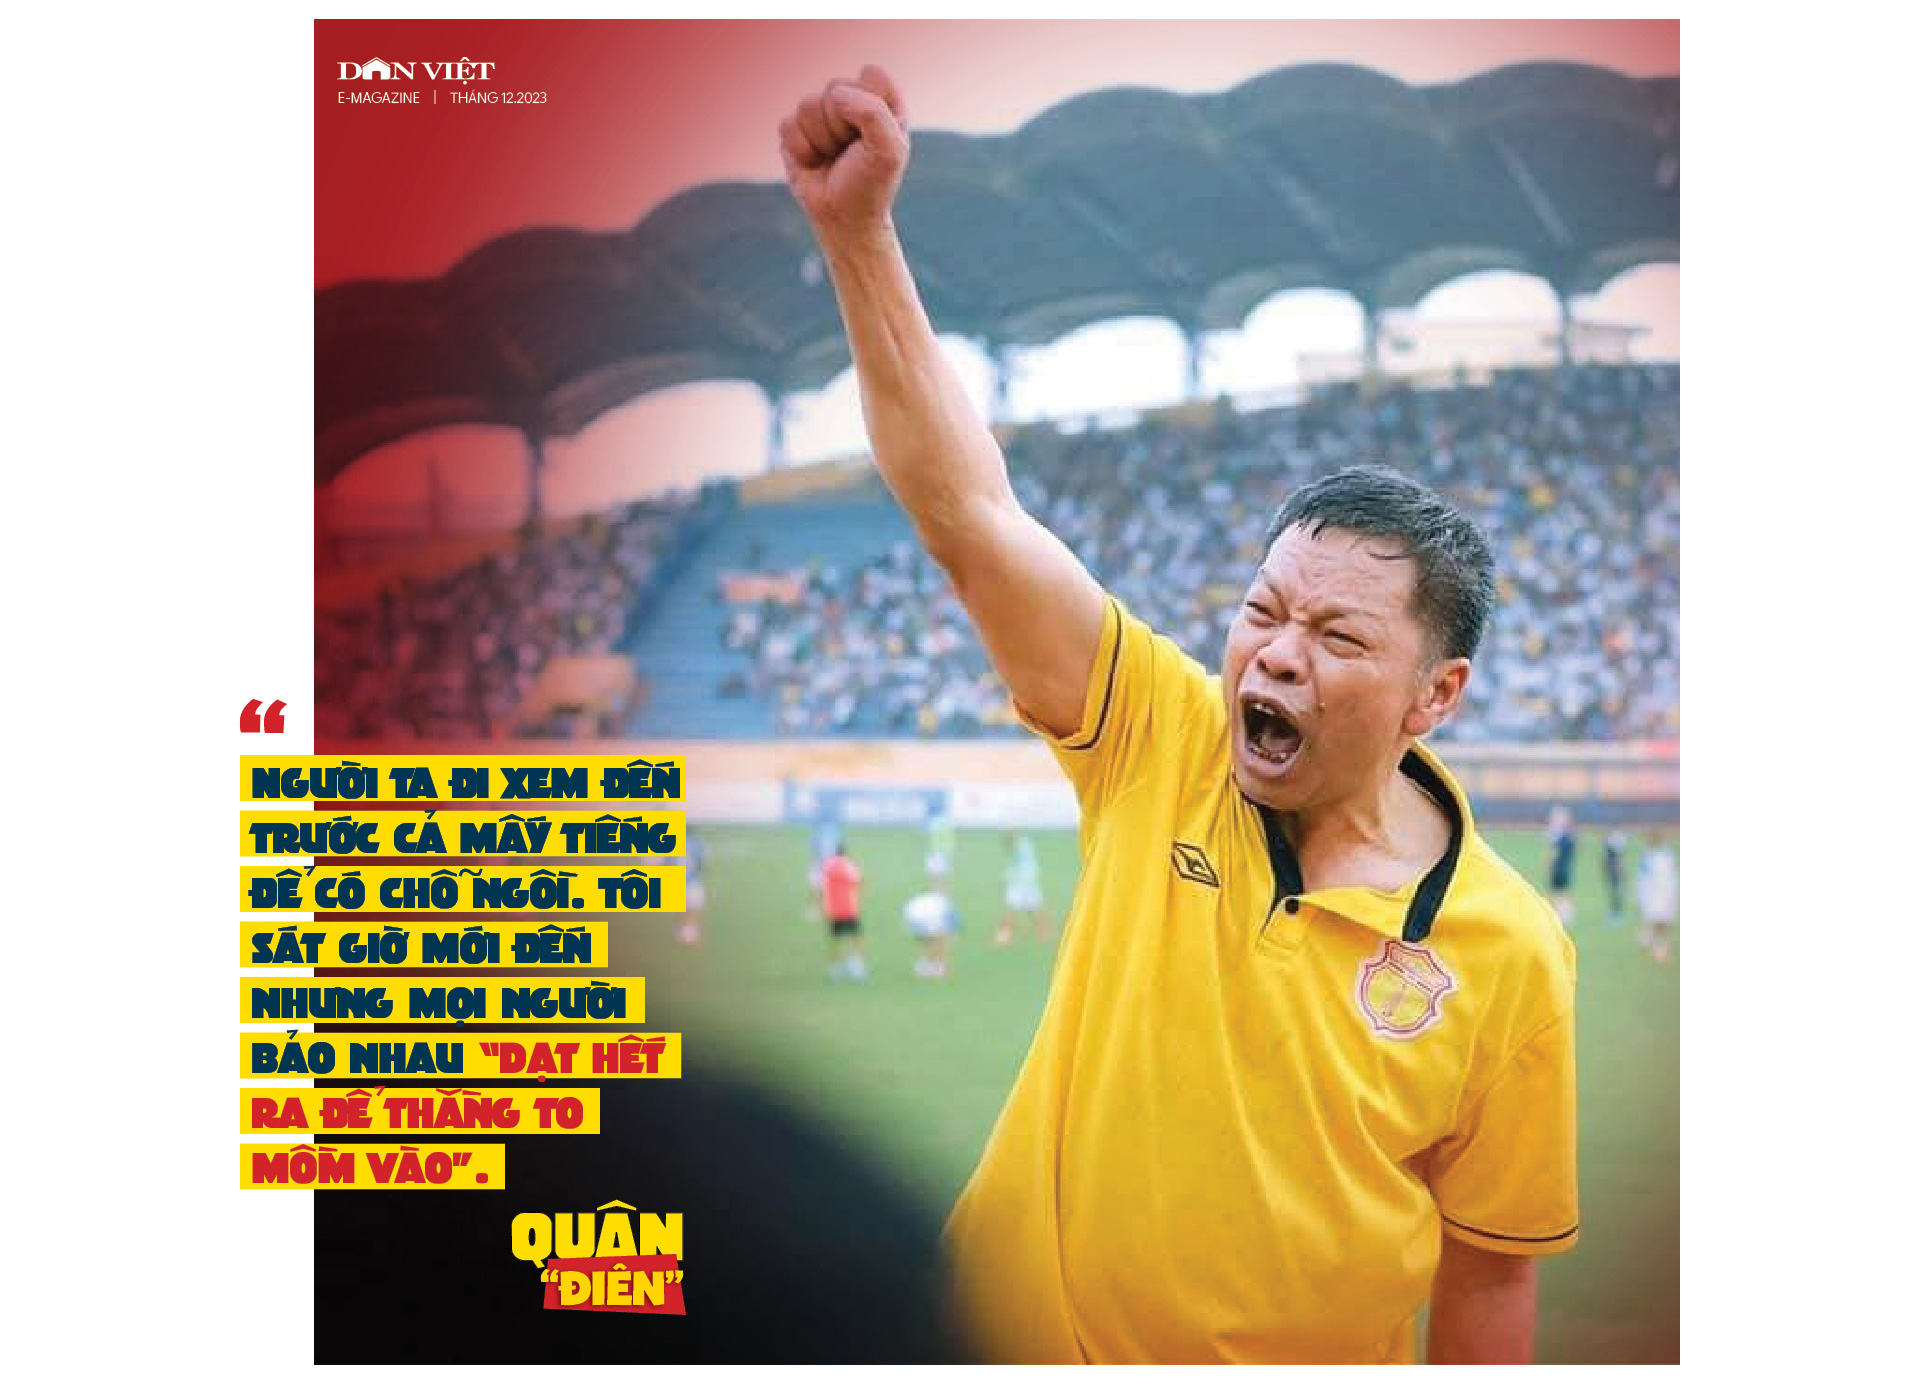 Nhạc trưởng CĐV Nam Định Quân "điên": Khi đội bóng gặp khó khăn nhất, tôi sẽ trở lại- Ảnh 2.